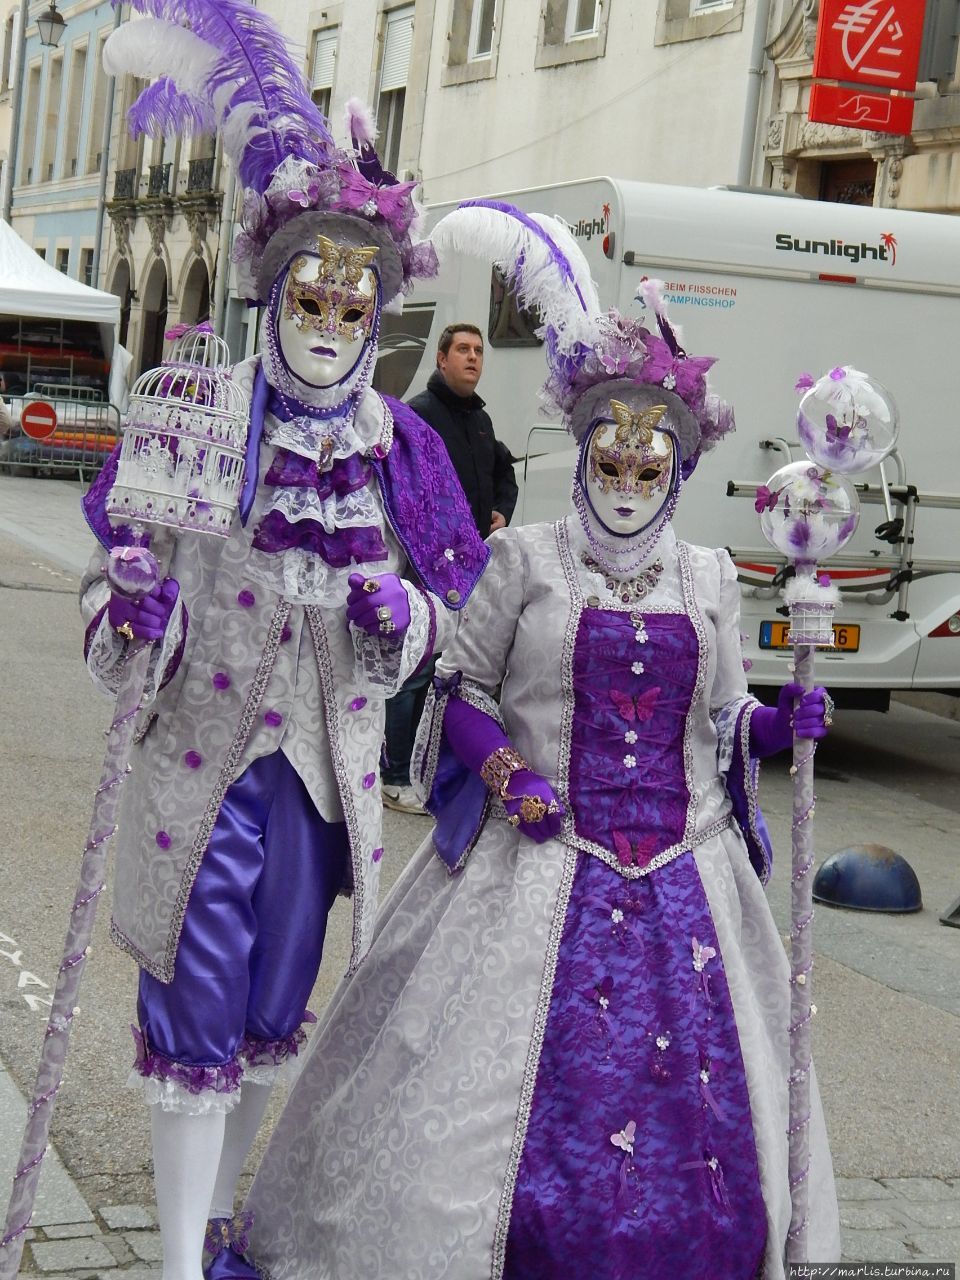 Венецианский карнавал в Лотарингии Ремирмон, Франция